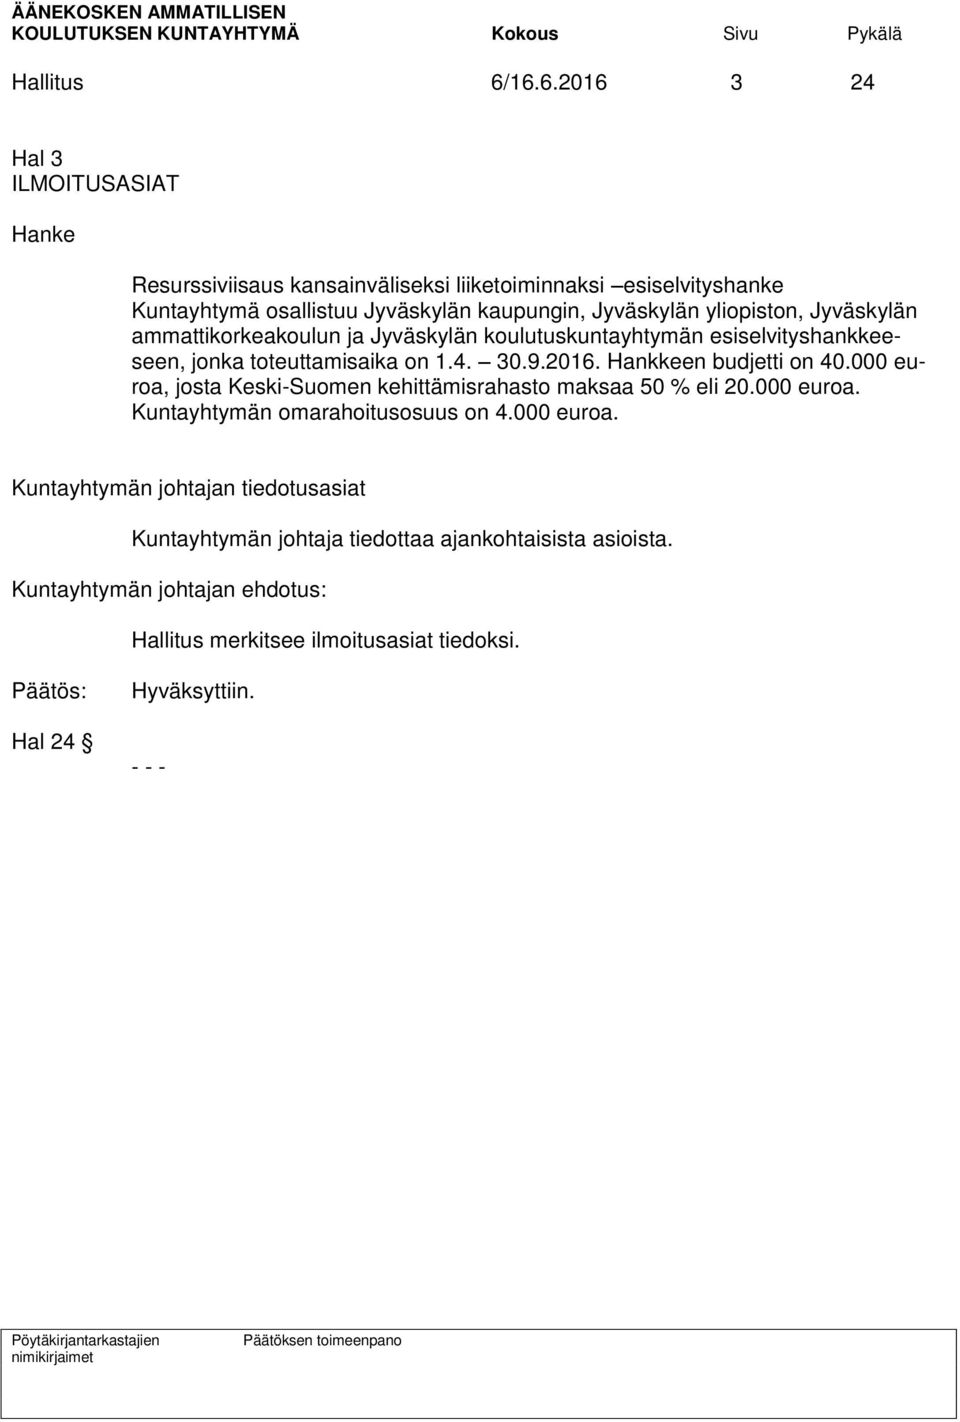 Jyväskylän yliopiston, Jyväskylän ammattikorkeakoulun ja Jyväskylän koulutuskuntayhtymän esiselvityshankkeeseen, jonka toteuttamisaika on 1.4. 30.9.2016.